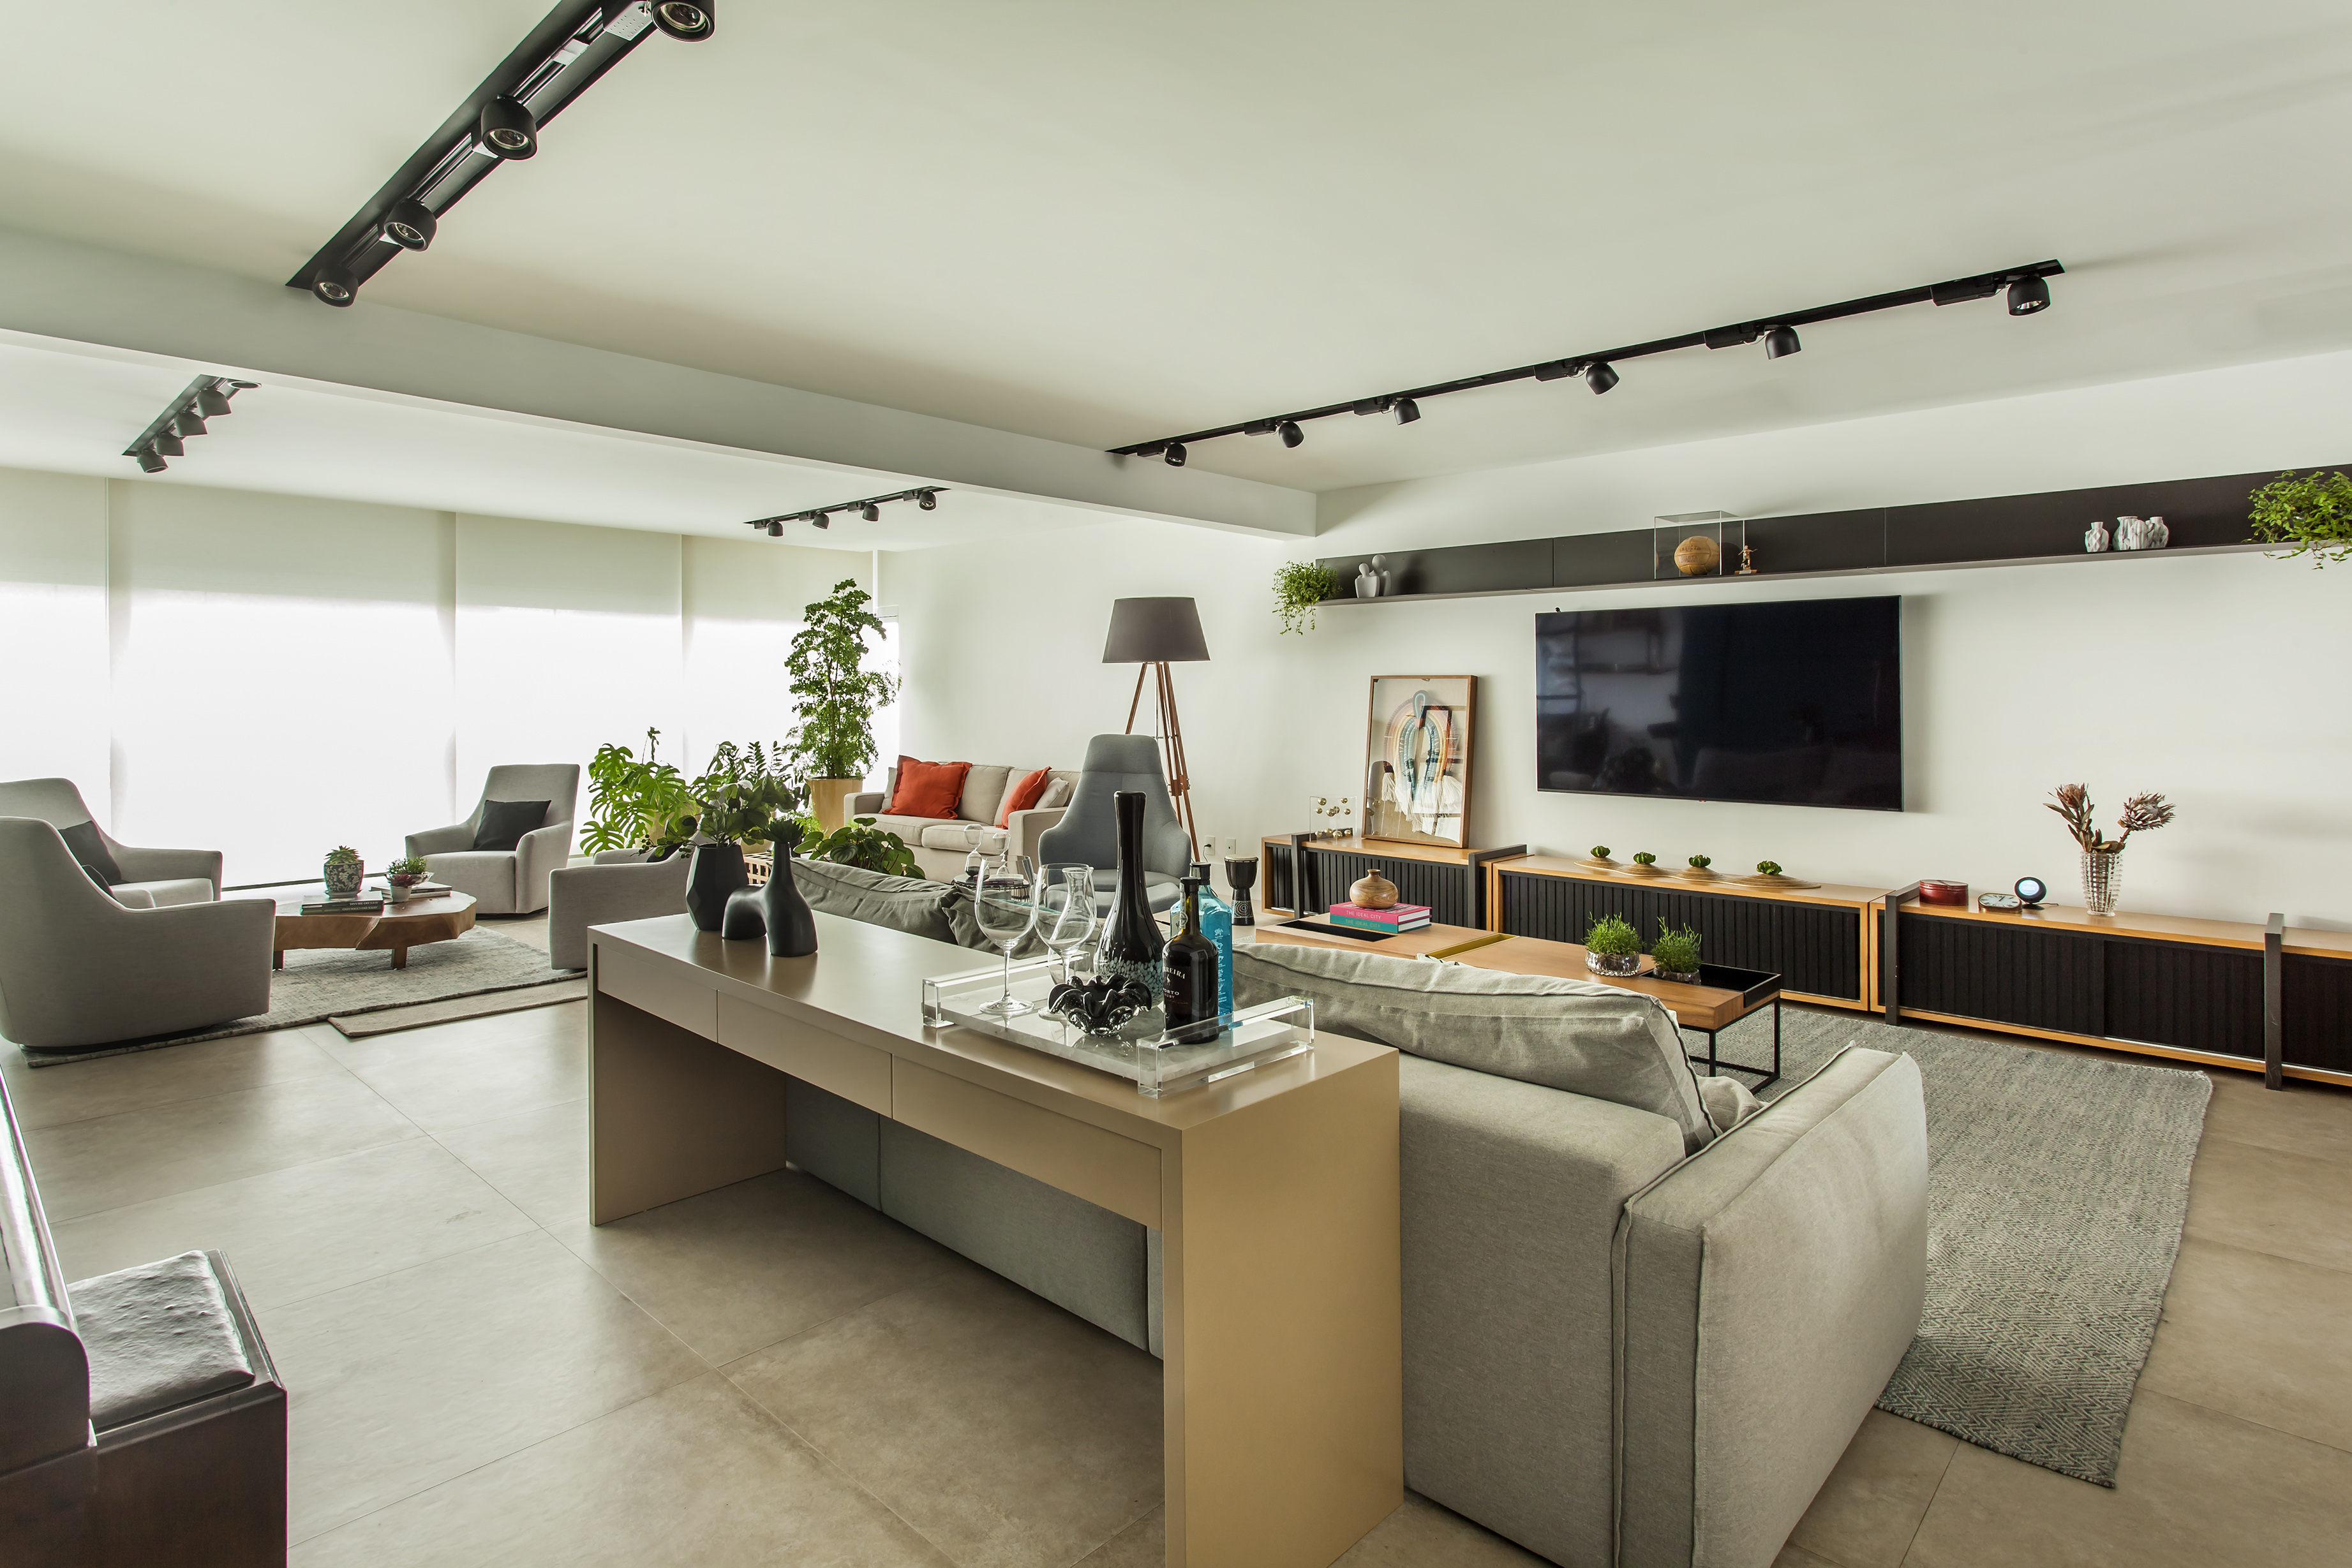 Apê de 275 m² ganha décor moderno e aconchegante com toques industriais